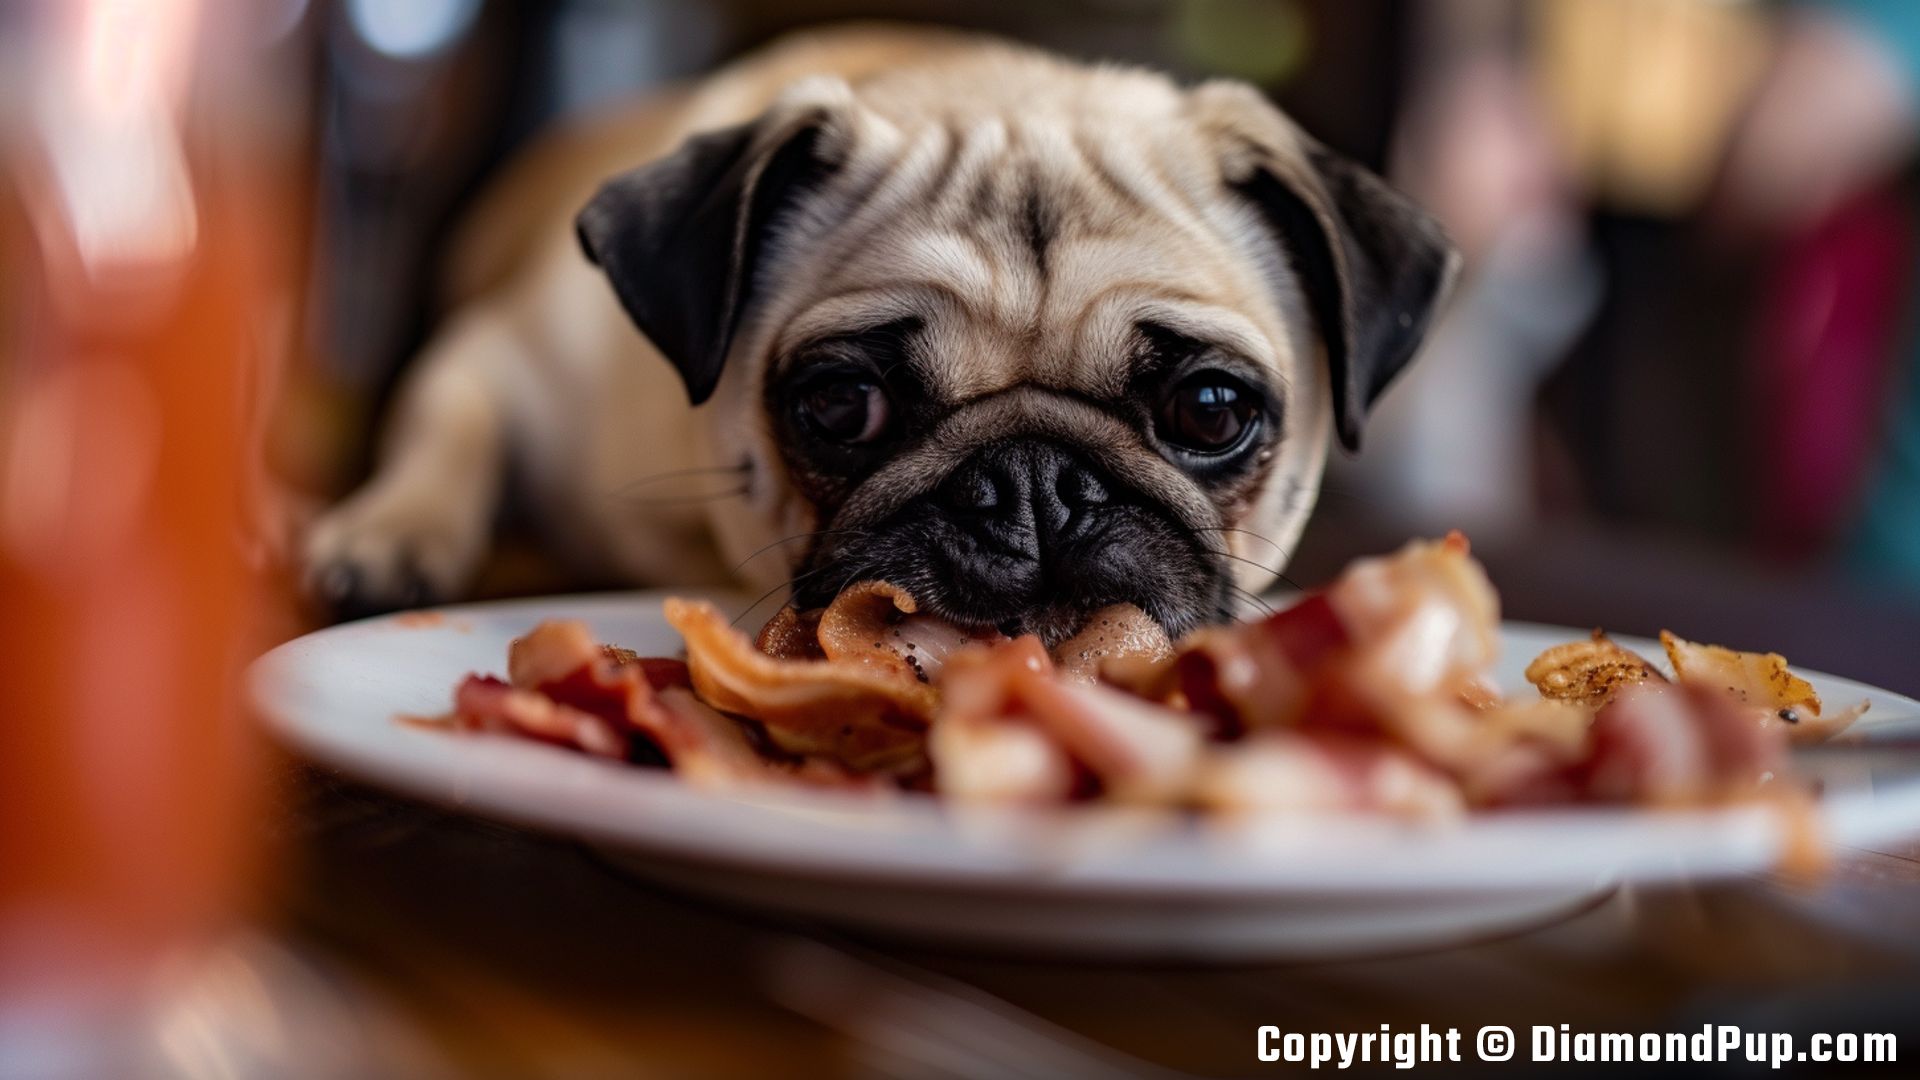 Photo of an Adorable Pug Eating Bacon